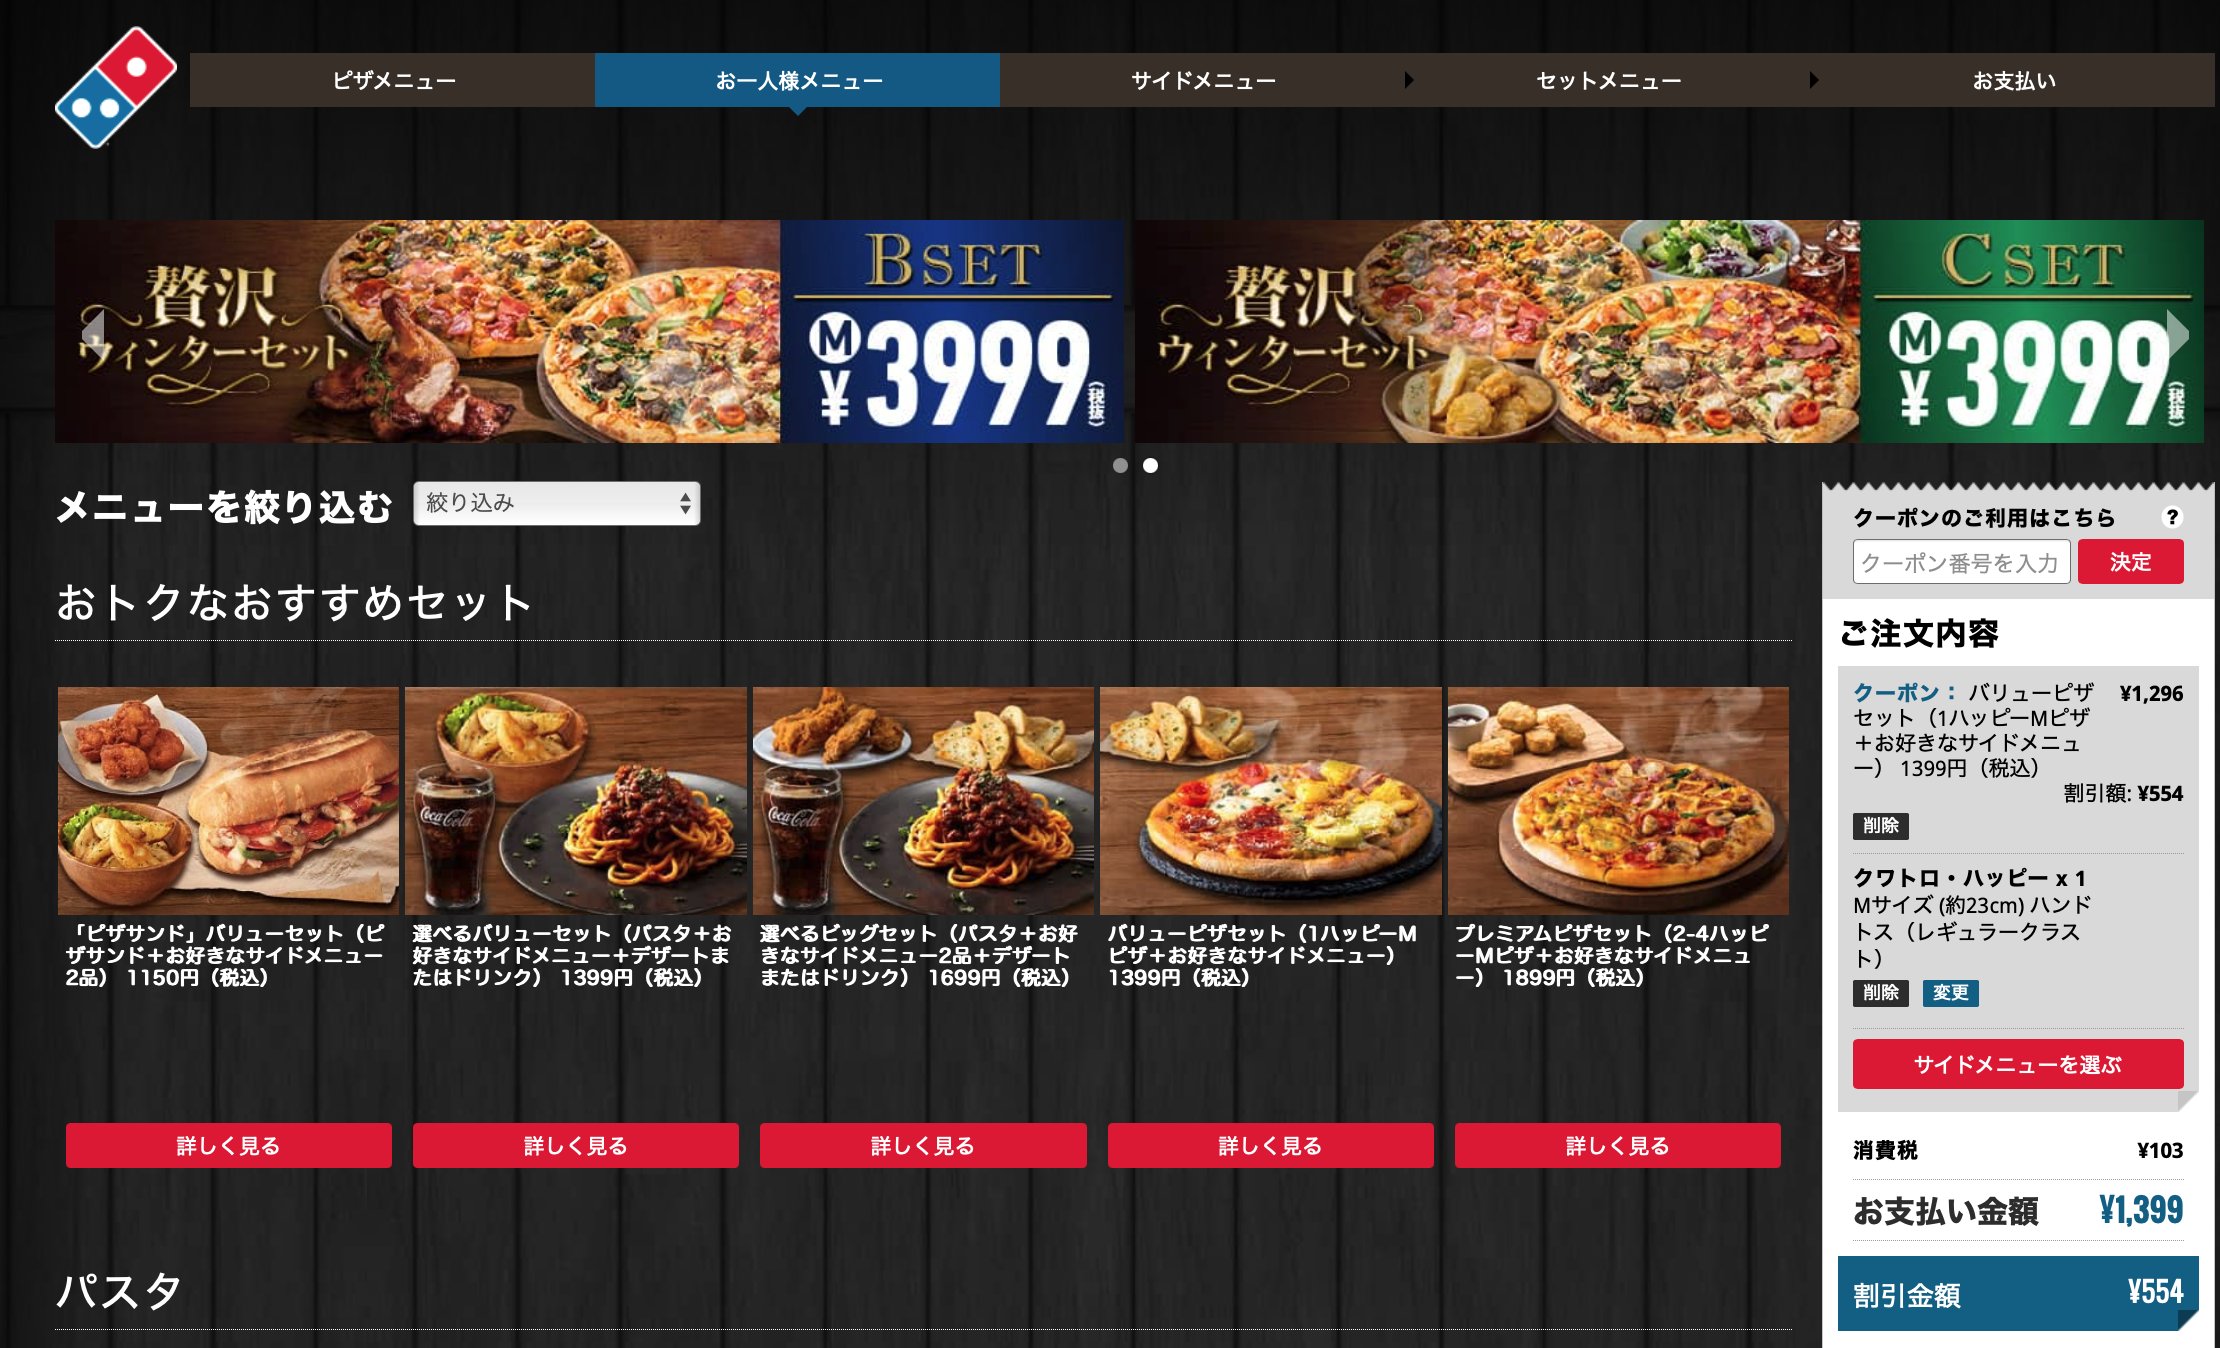 あきな わたしは 私 そもそも1 399円のお一人さまメニュー選んで ピザの選択画面で出てくるのがその金額以上のピザというね 何選んでも値引きされるし 日本の宅配ピザは欧米と比べて高いと言われているけれど 本来であればこの値引き分は利益に